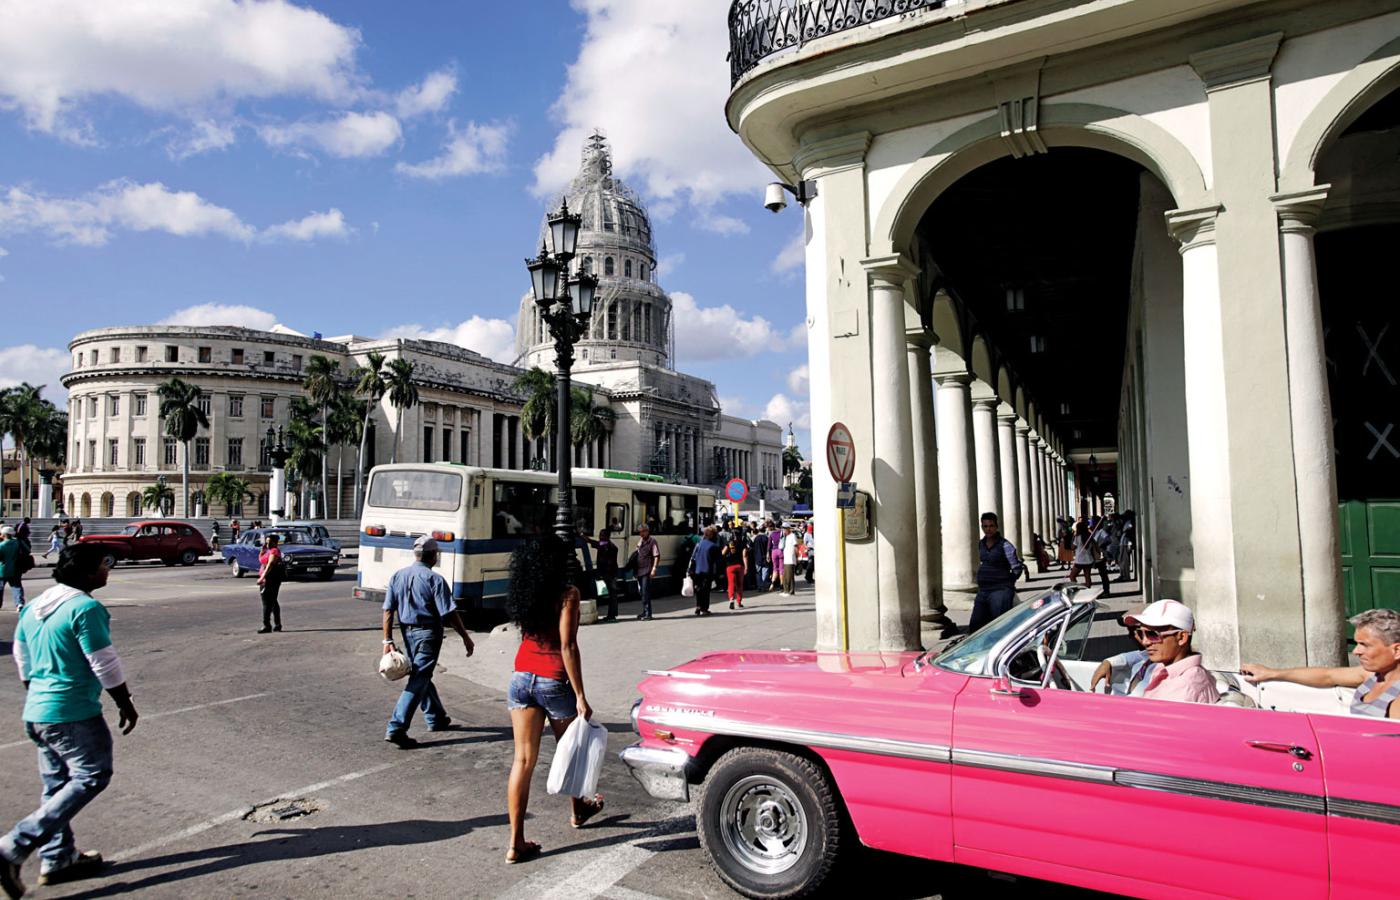 Kuba może stać się wkrótce krajem wielu możliwości i szans.